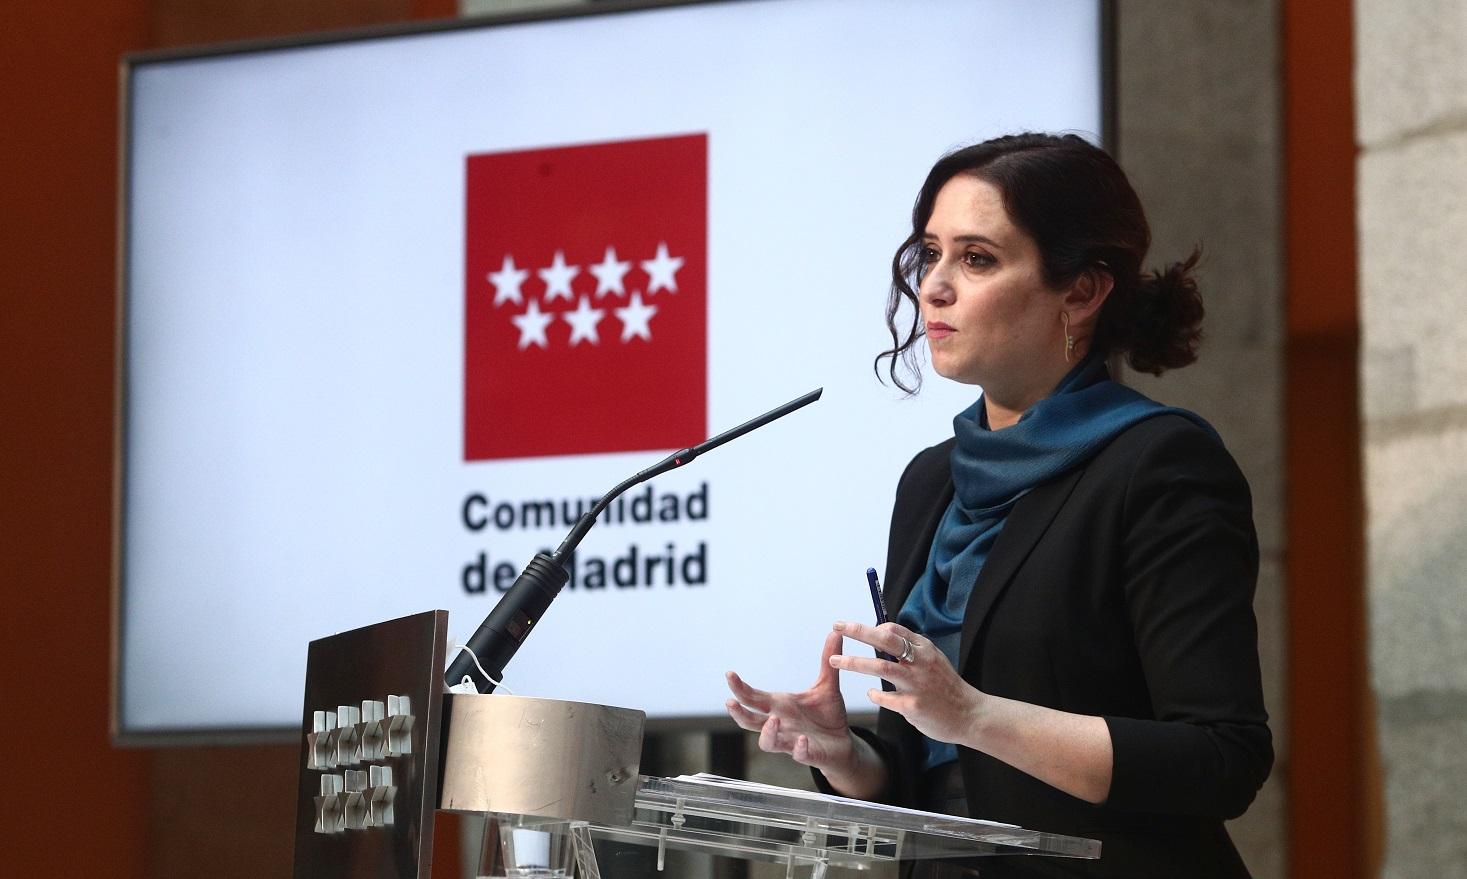 La presidenta de la Comunidad de Madrid, Isabel Díaz Ayuso, en una imagen de archivo. Fuente: Europa Press.